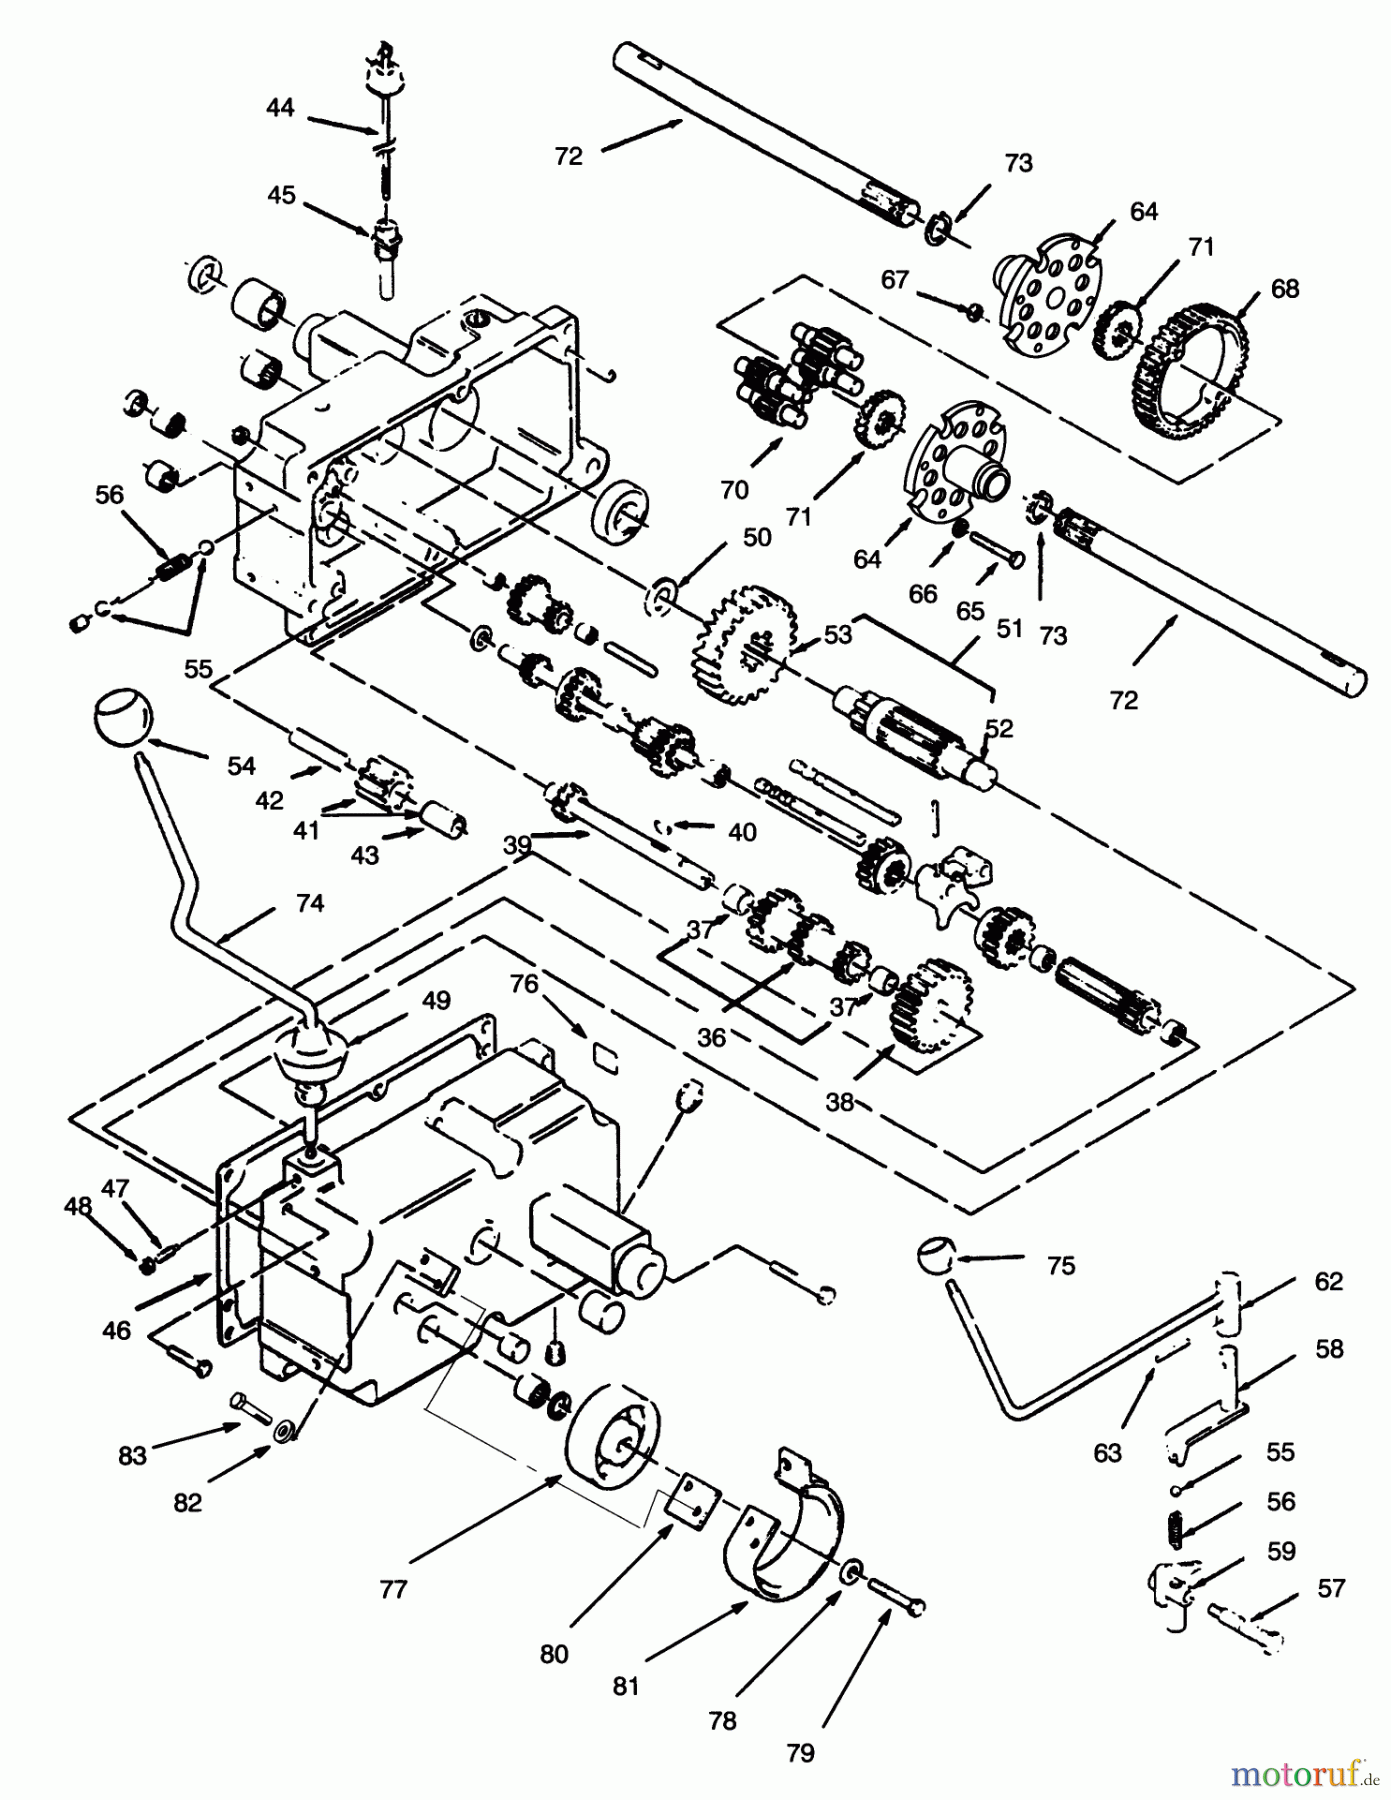  Toro Neu Mowers, Lawn & Garden Tractor Seite 1 73380 (312-8) - Toro 312-8 Garden Tractor, 1994 (4900001-4999999) TRANSMISSION 8-SPEED #2